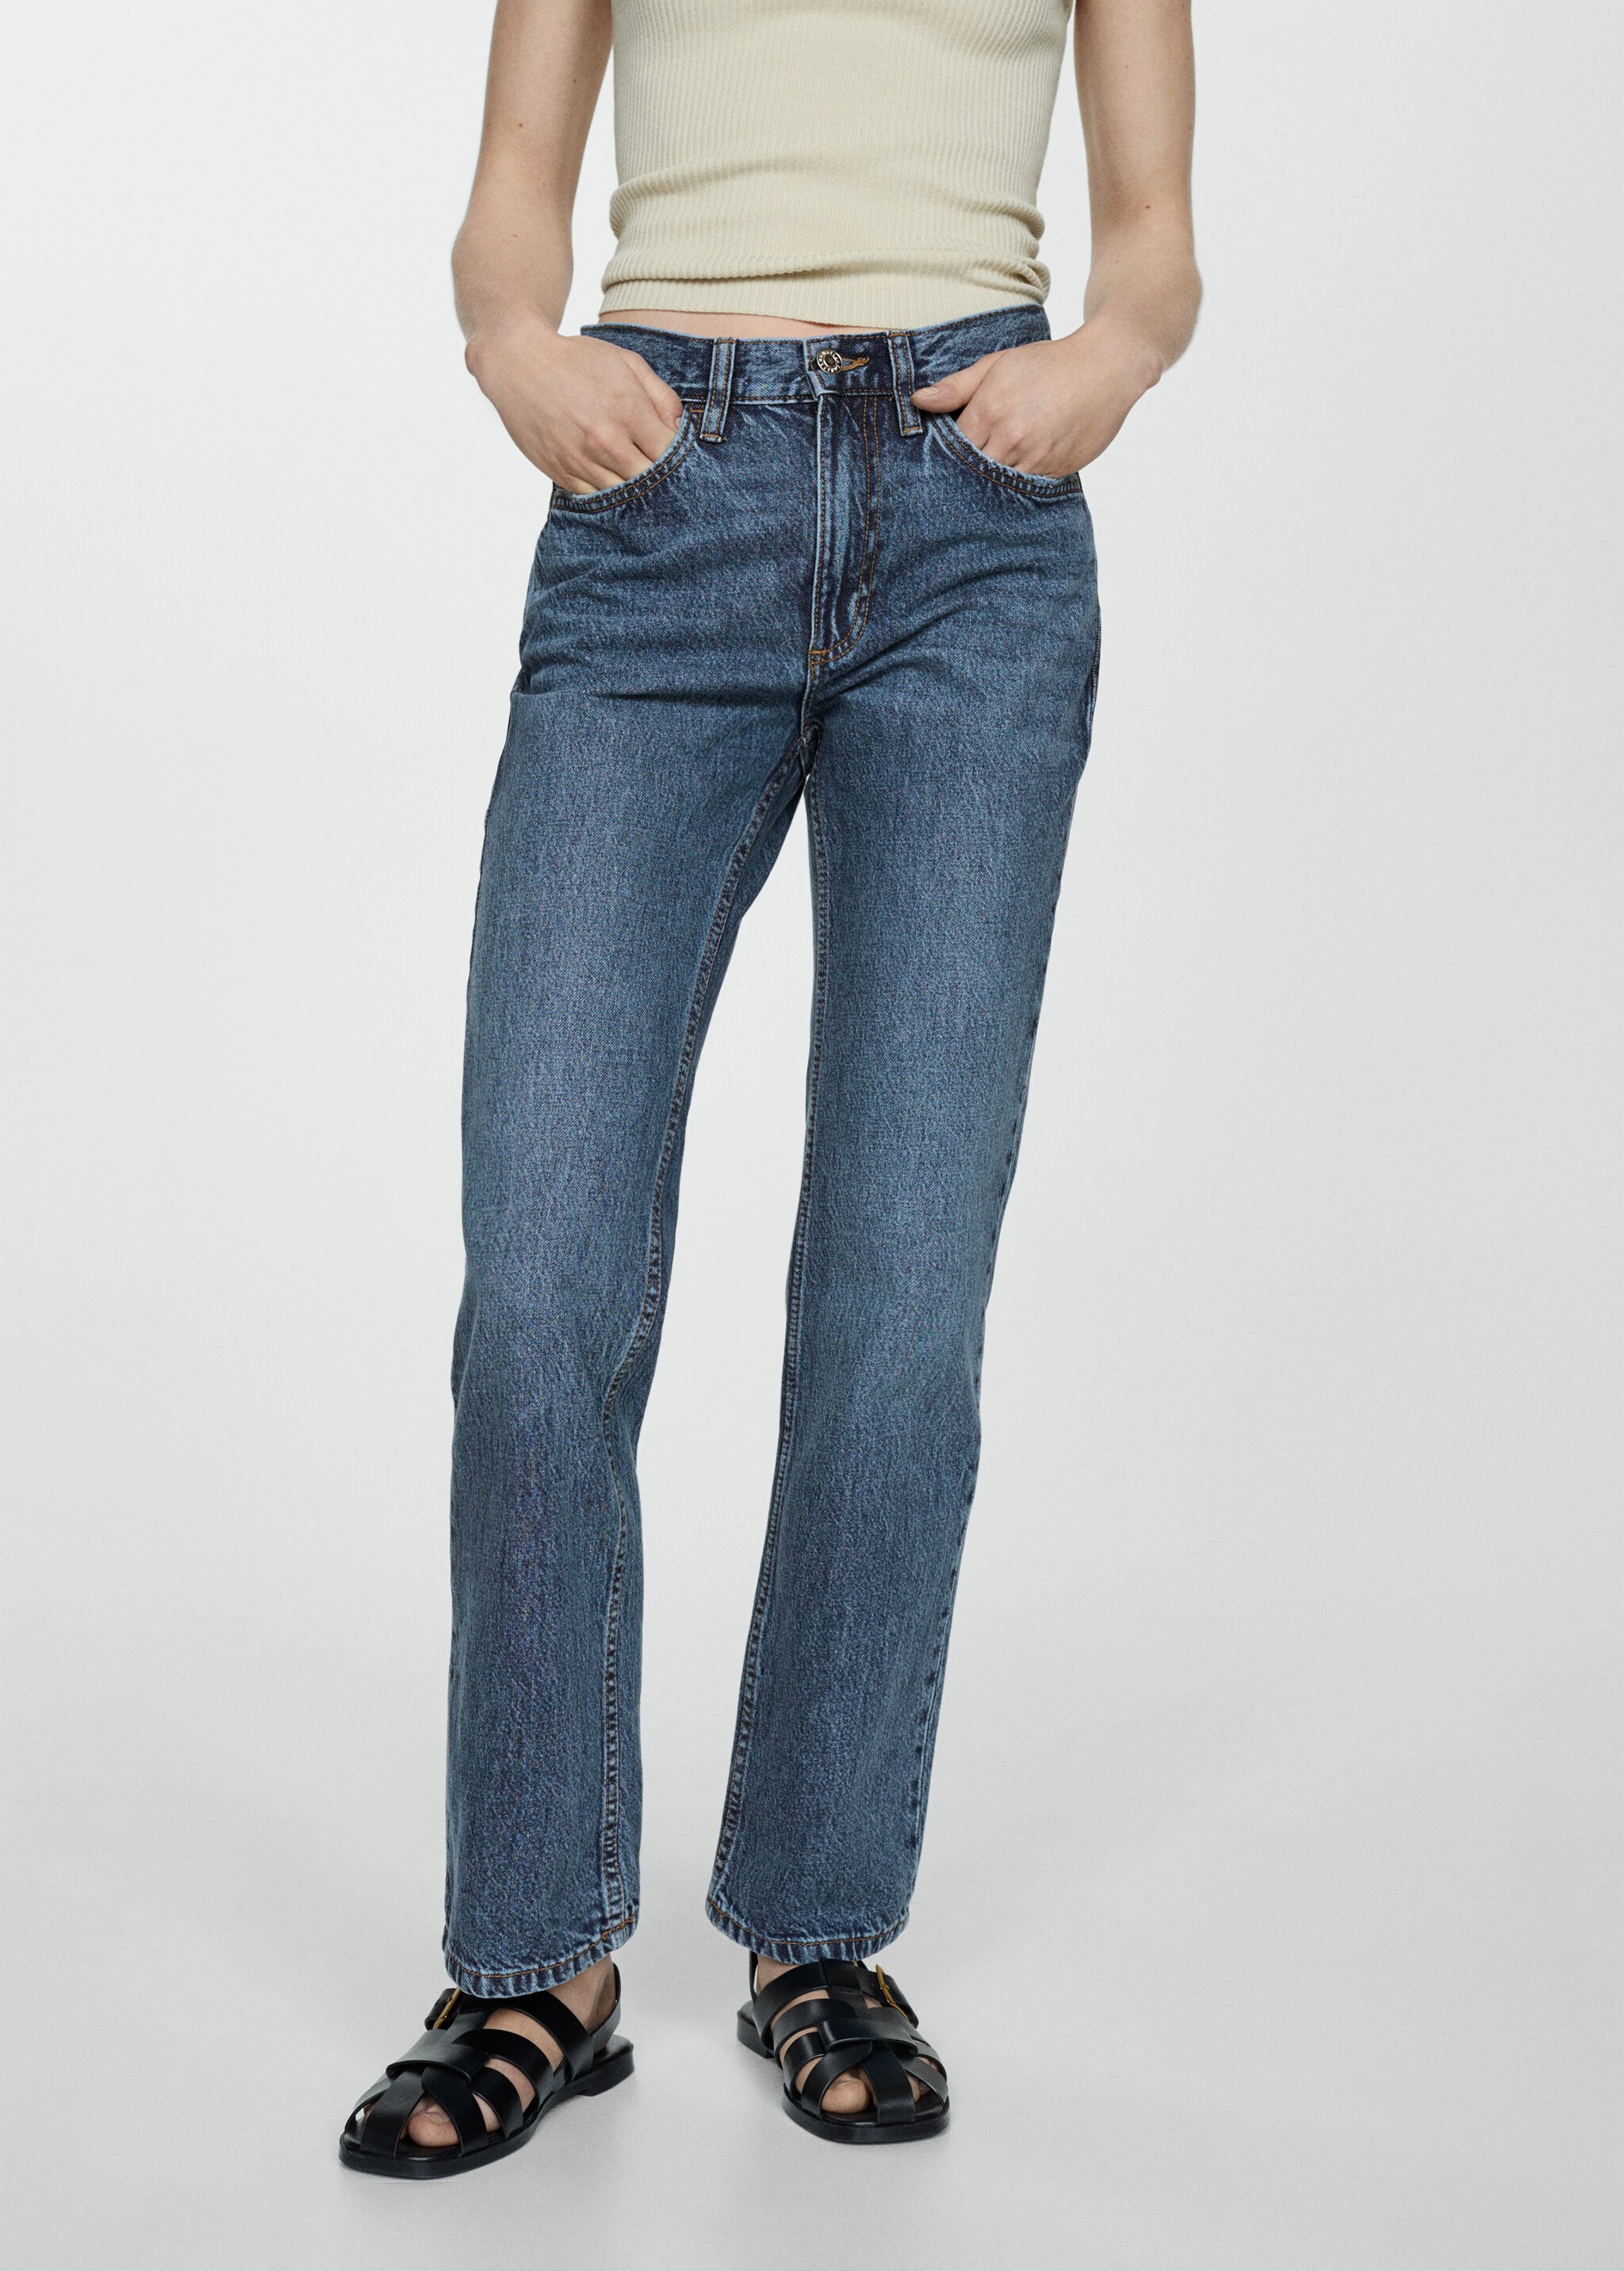 Jeans retos com cintura de altura média - Plano médio